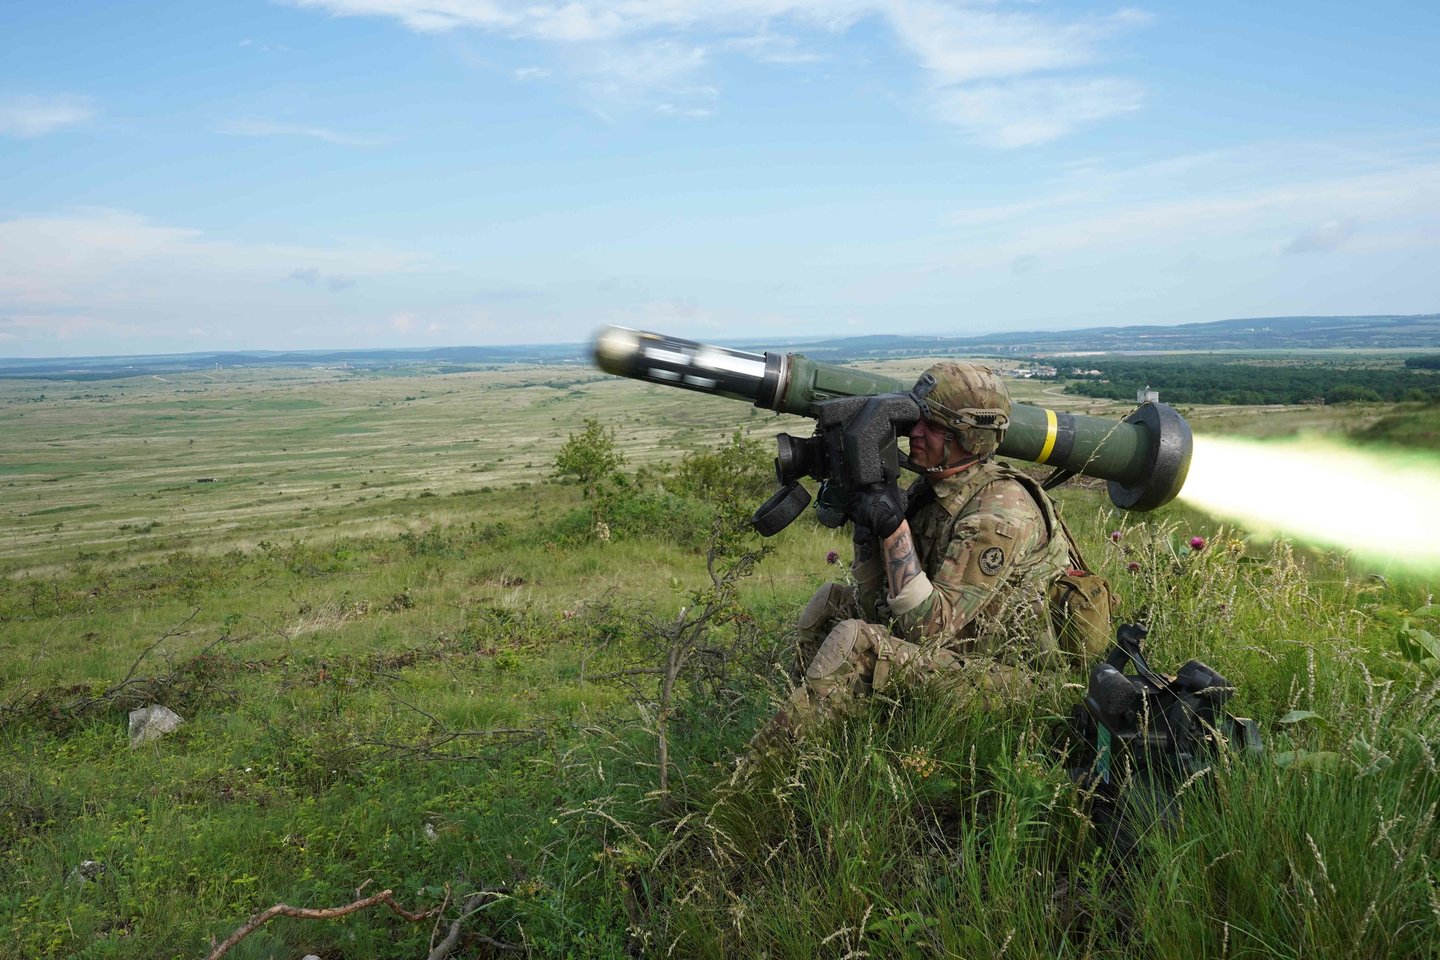  JAV valstybės departamentas ketvirtadienį patvirtino 150-ies prieštankinių raketų ir susijusios pagalbinės įrangos už 39,2 mln. dolerių pardavimą Ukrainai.<br>AFP/Scanpix nuotr.